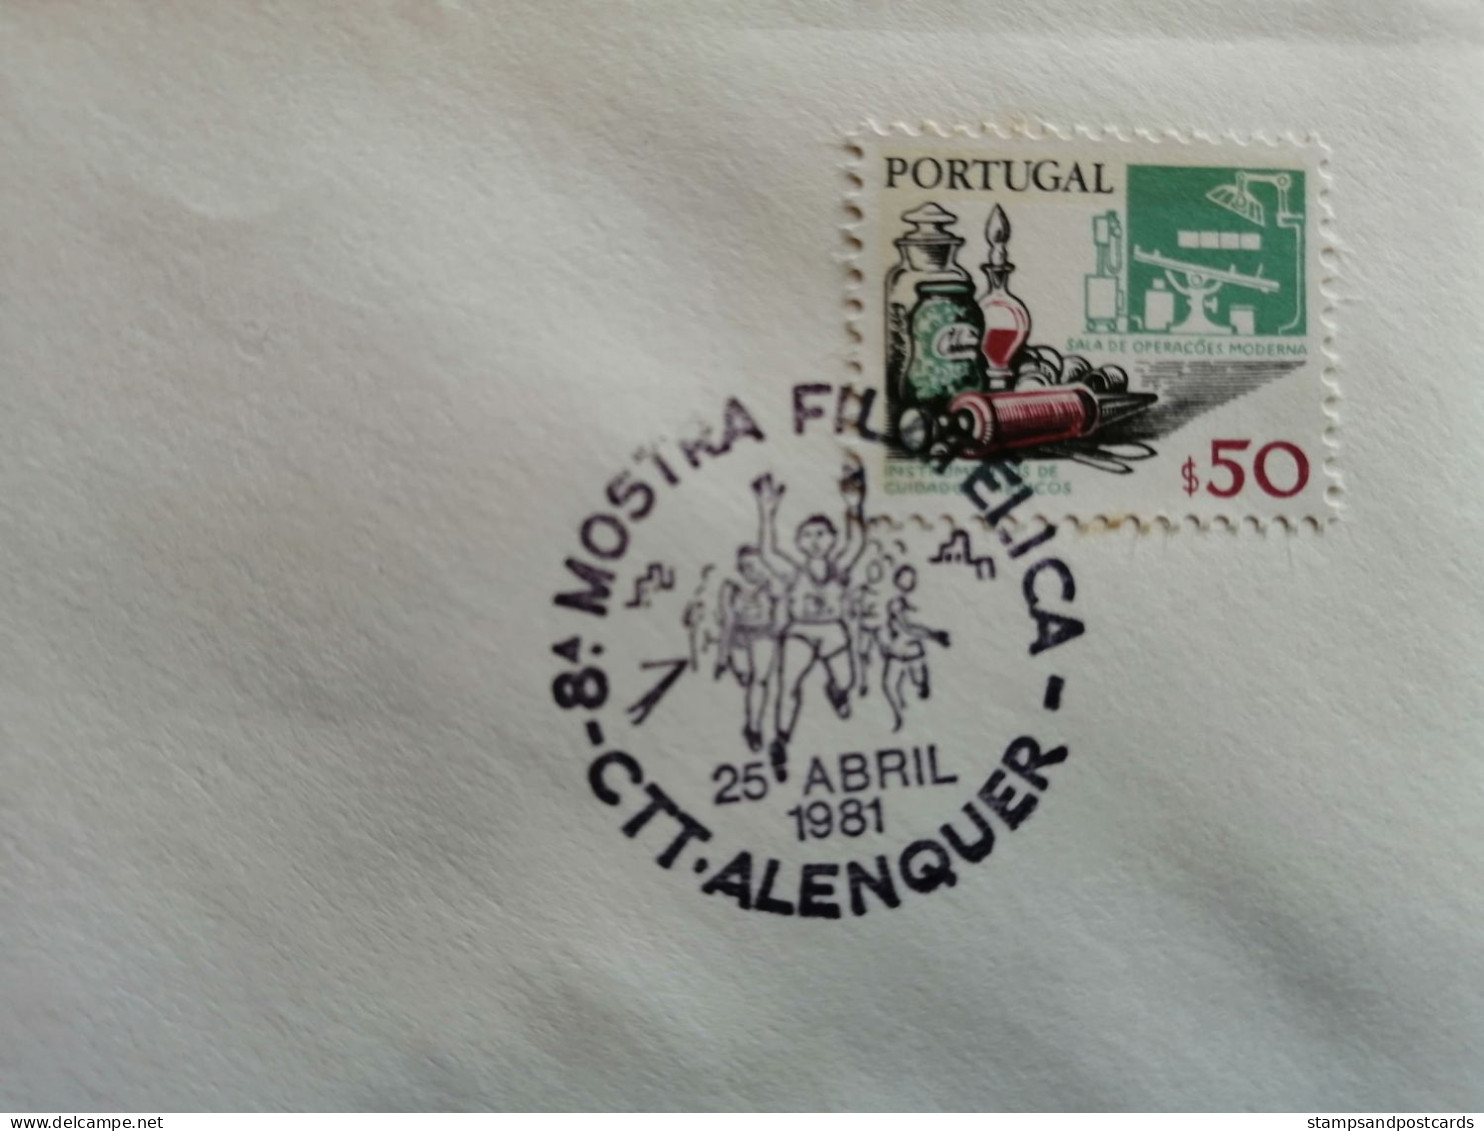 Portugal Cachet Commémoratif Expo Philatelique Alenquer 1981 Révolution Des Oeillets 25 Avril Event Postmark - Postal Logo & Postmarks